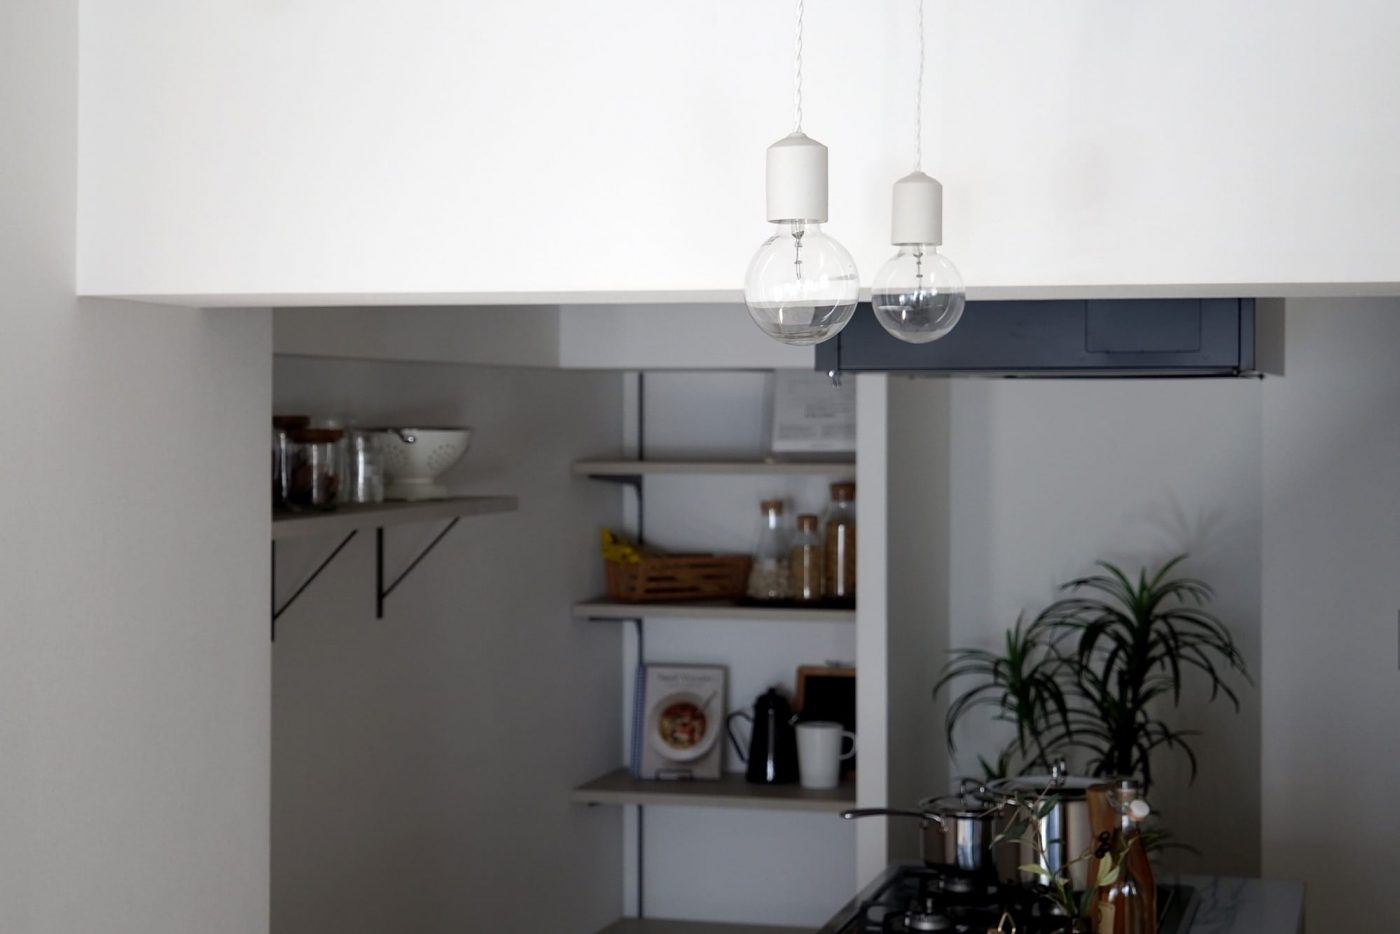 部屋の雰囲気に馴染ませた陶器の白マットをキッチンに2灯並べて。